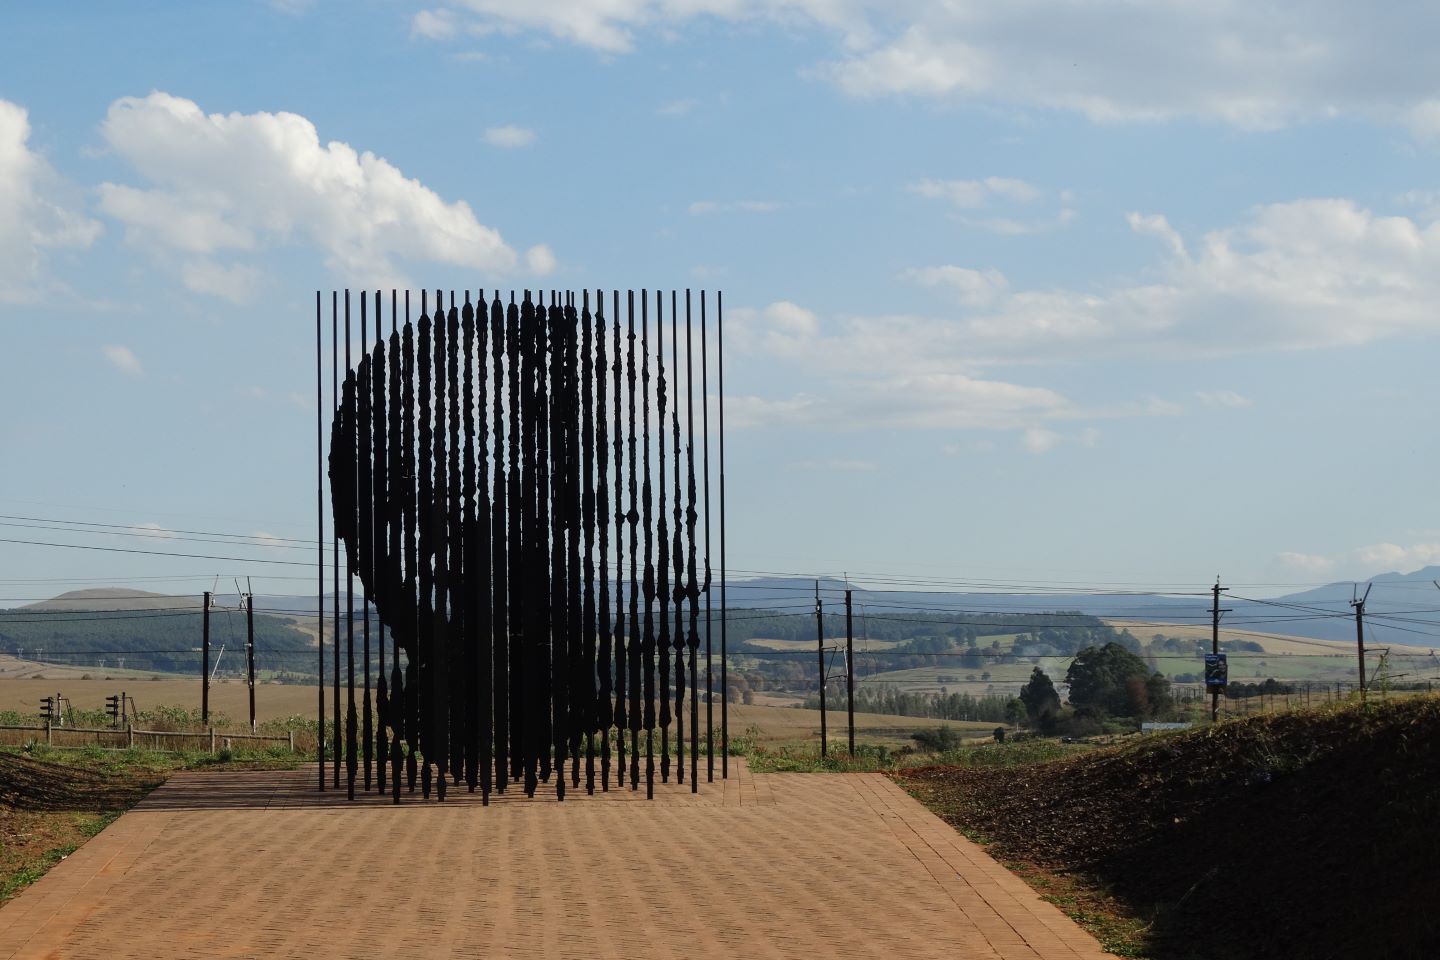 Meet the Locals - Roots of Mandela